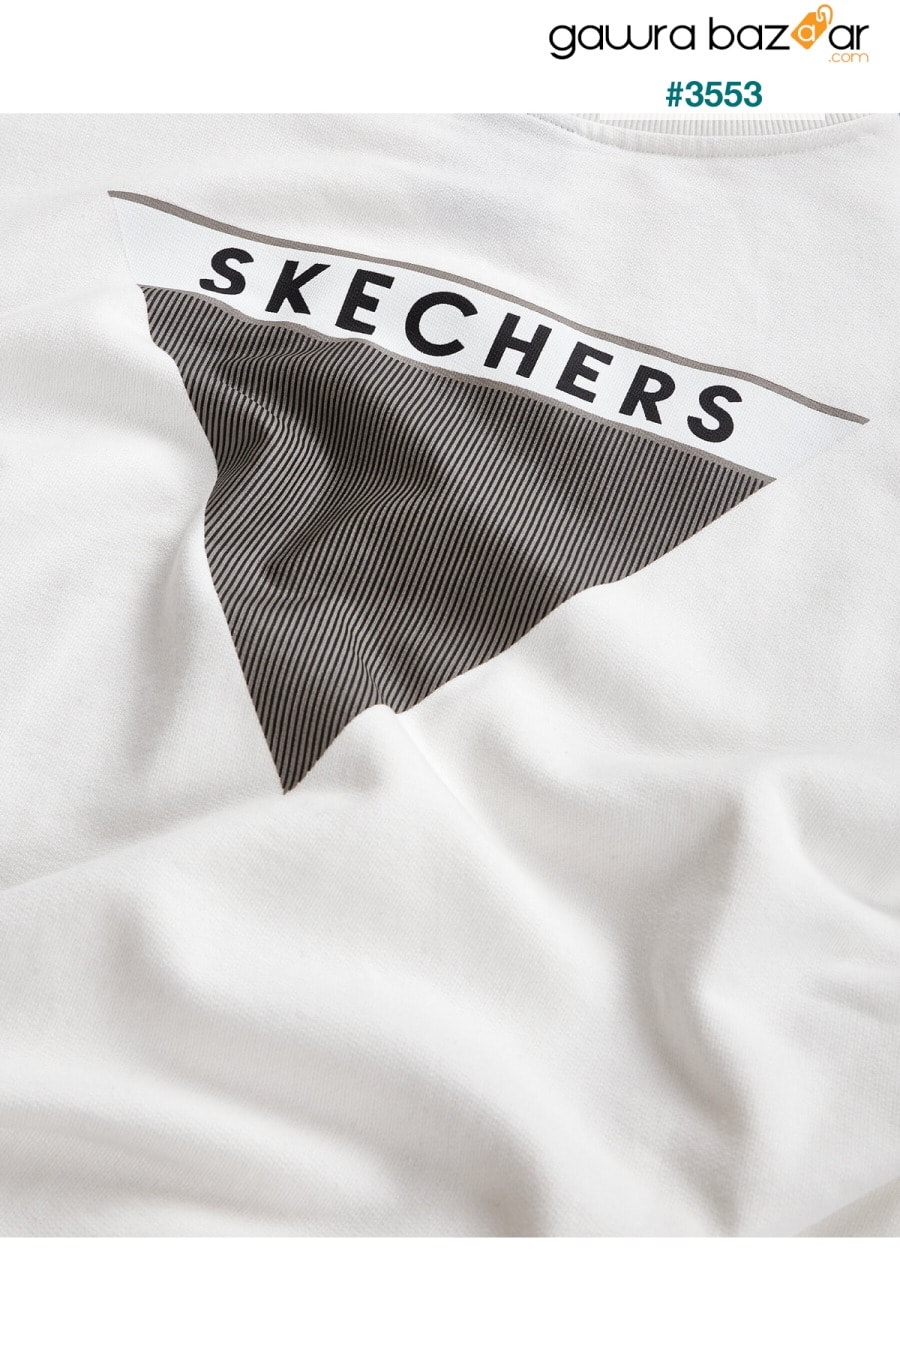 سويت شيرت أبيض للرجال Skechers 6